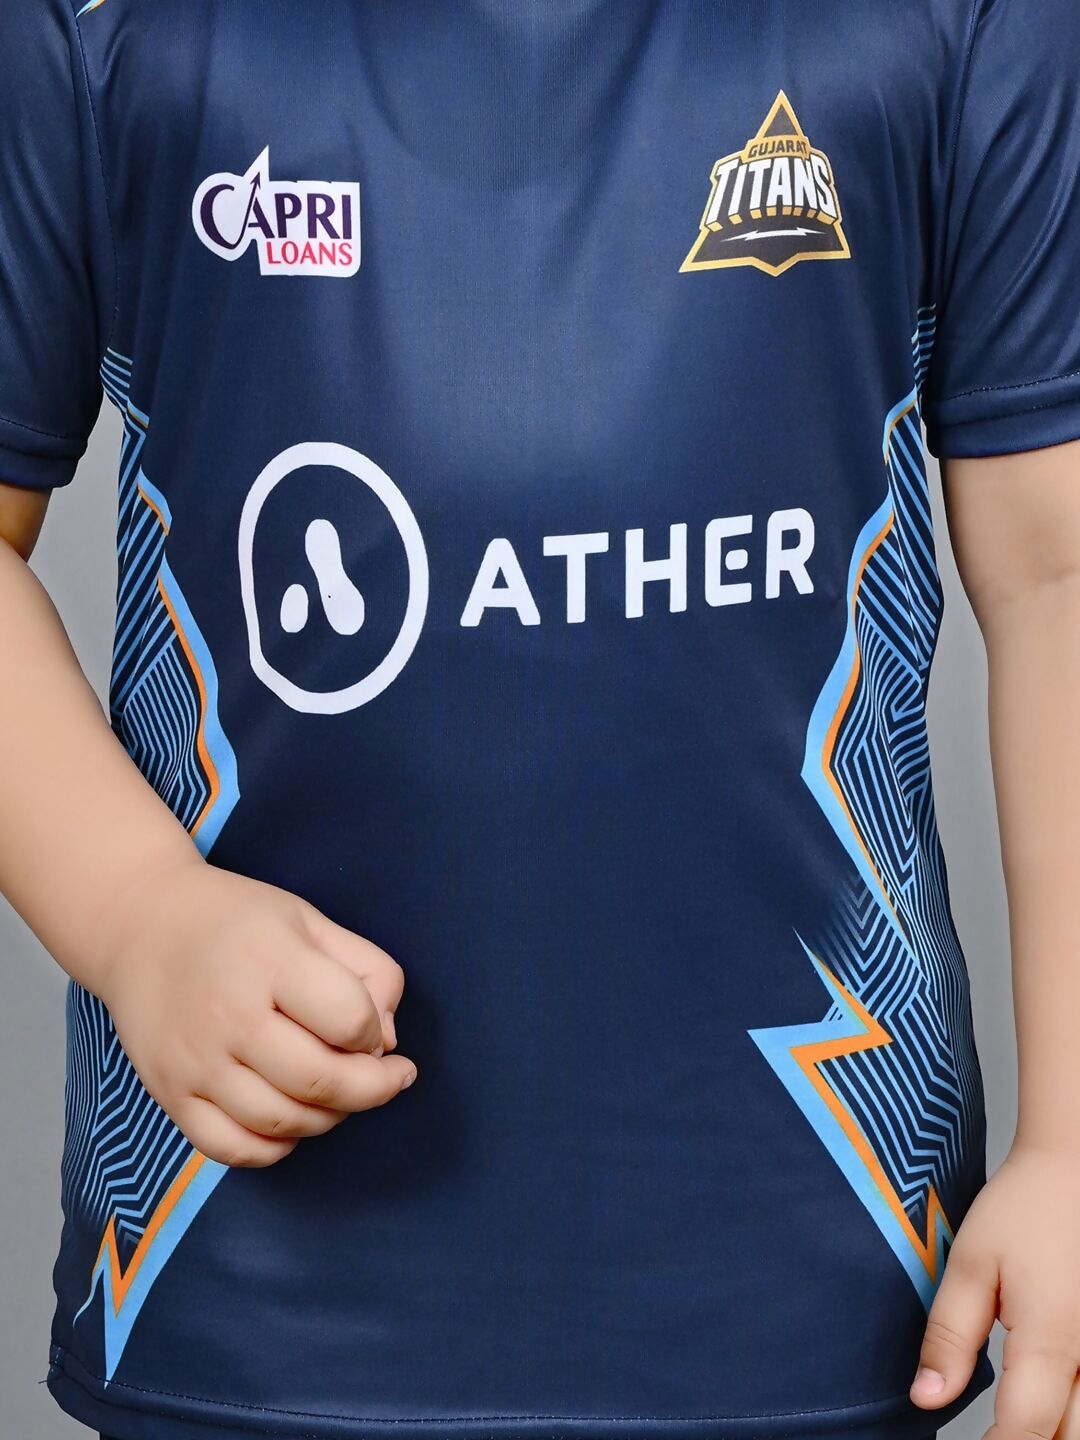 Baesd Kids IPL Cricket Jersey T-shirt T20 - Distacart